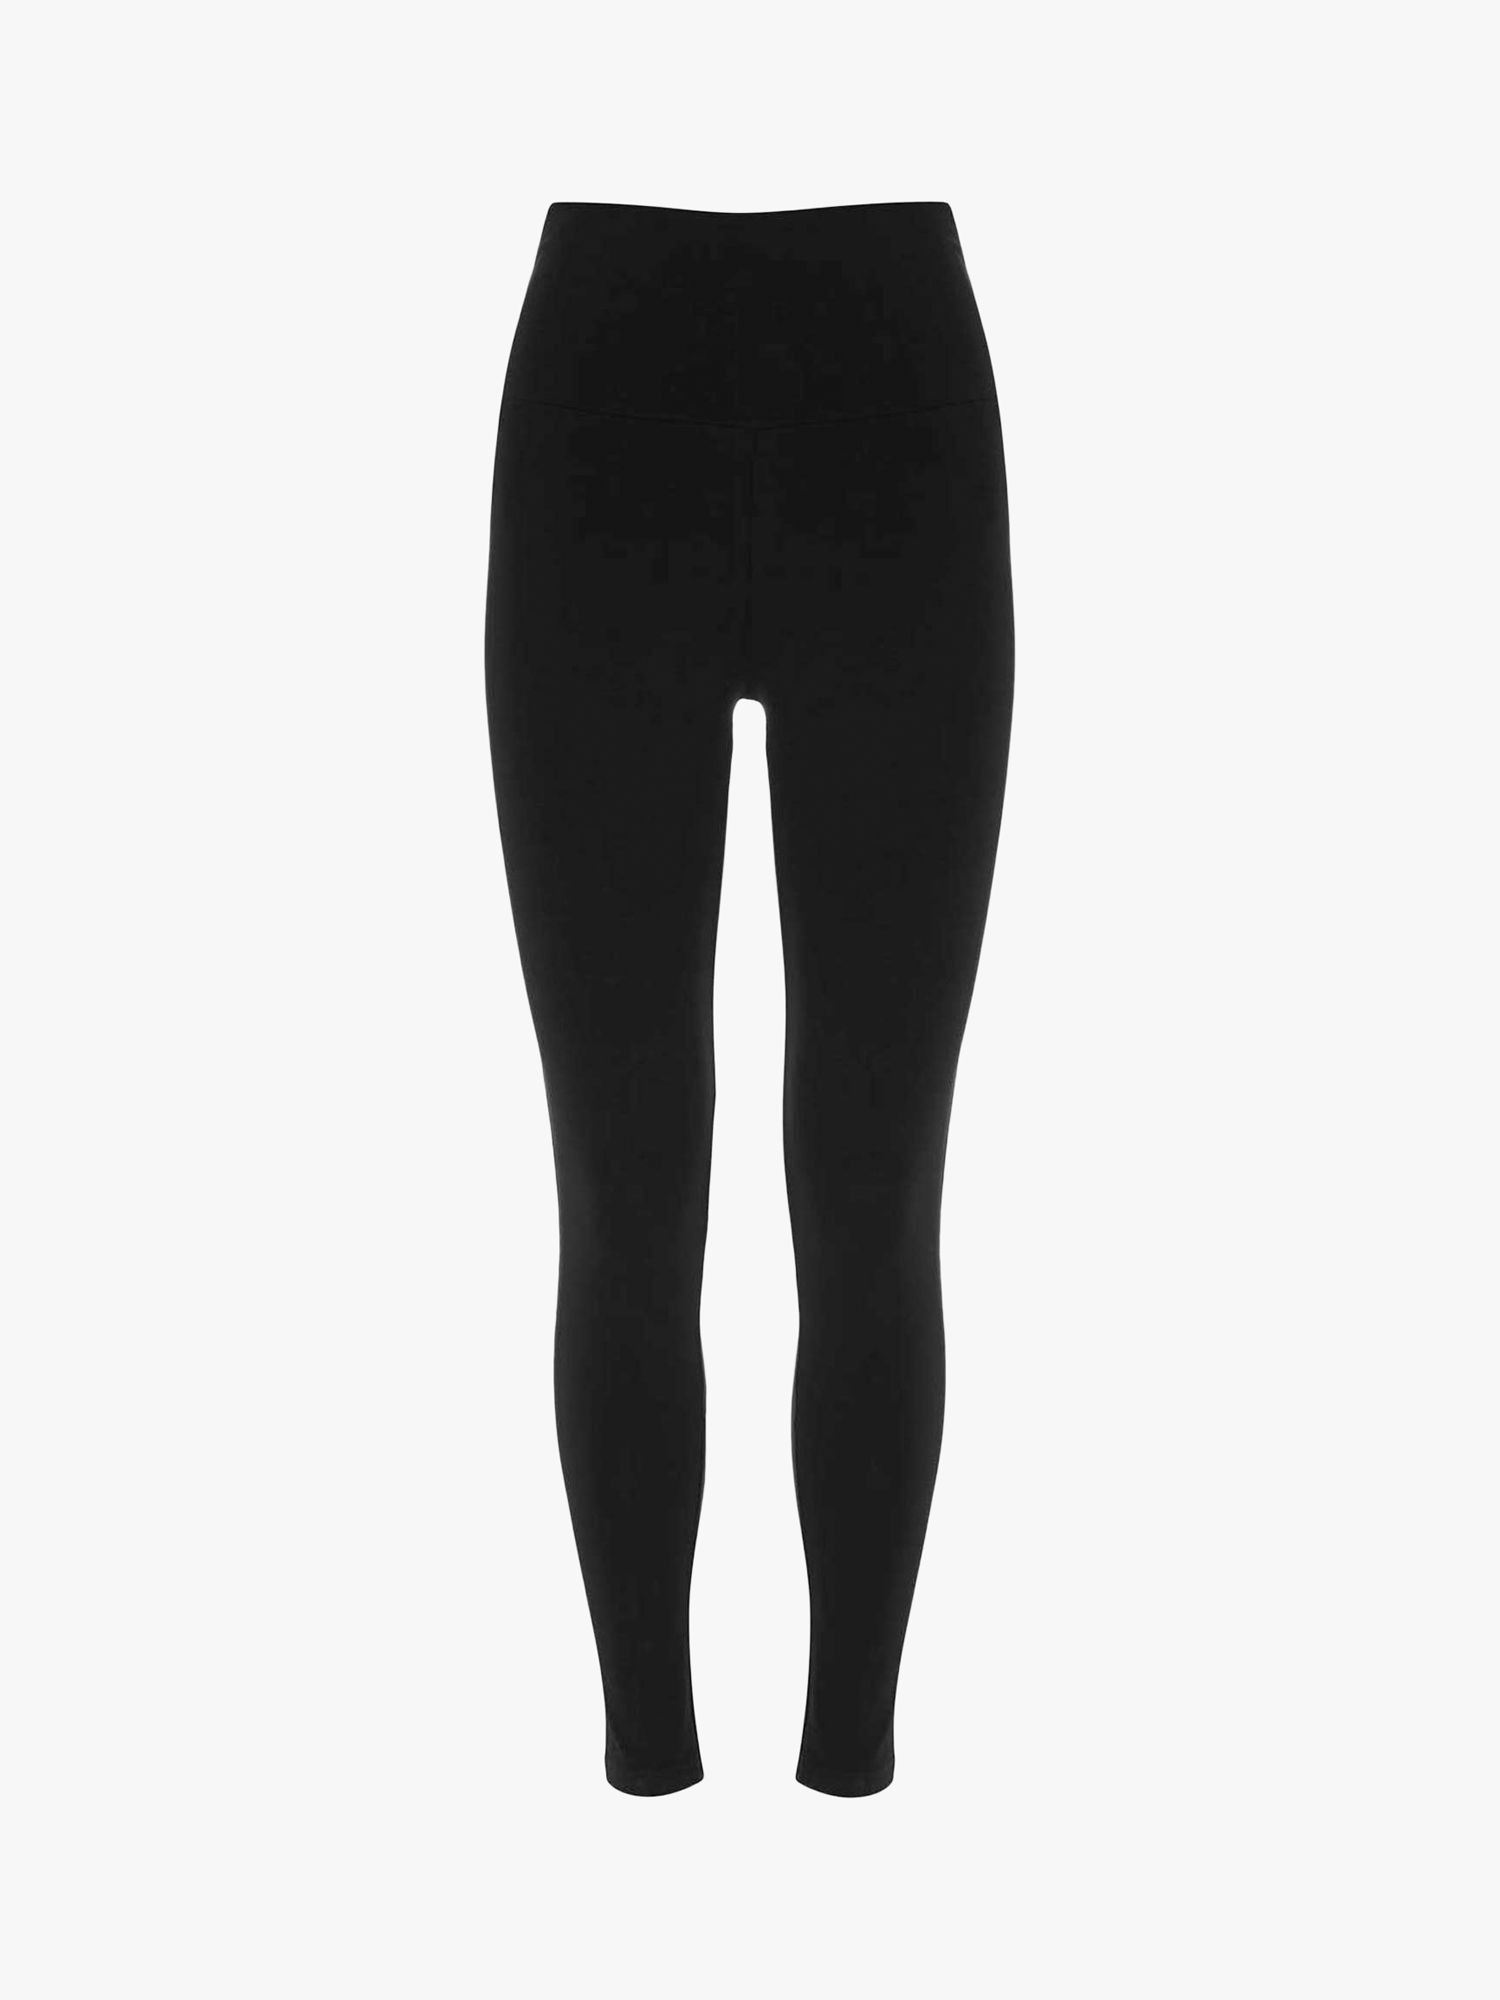 Buy Mint Velvet Black Side Stripe Leggings from Next Luxembourg